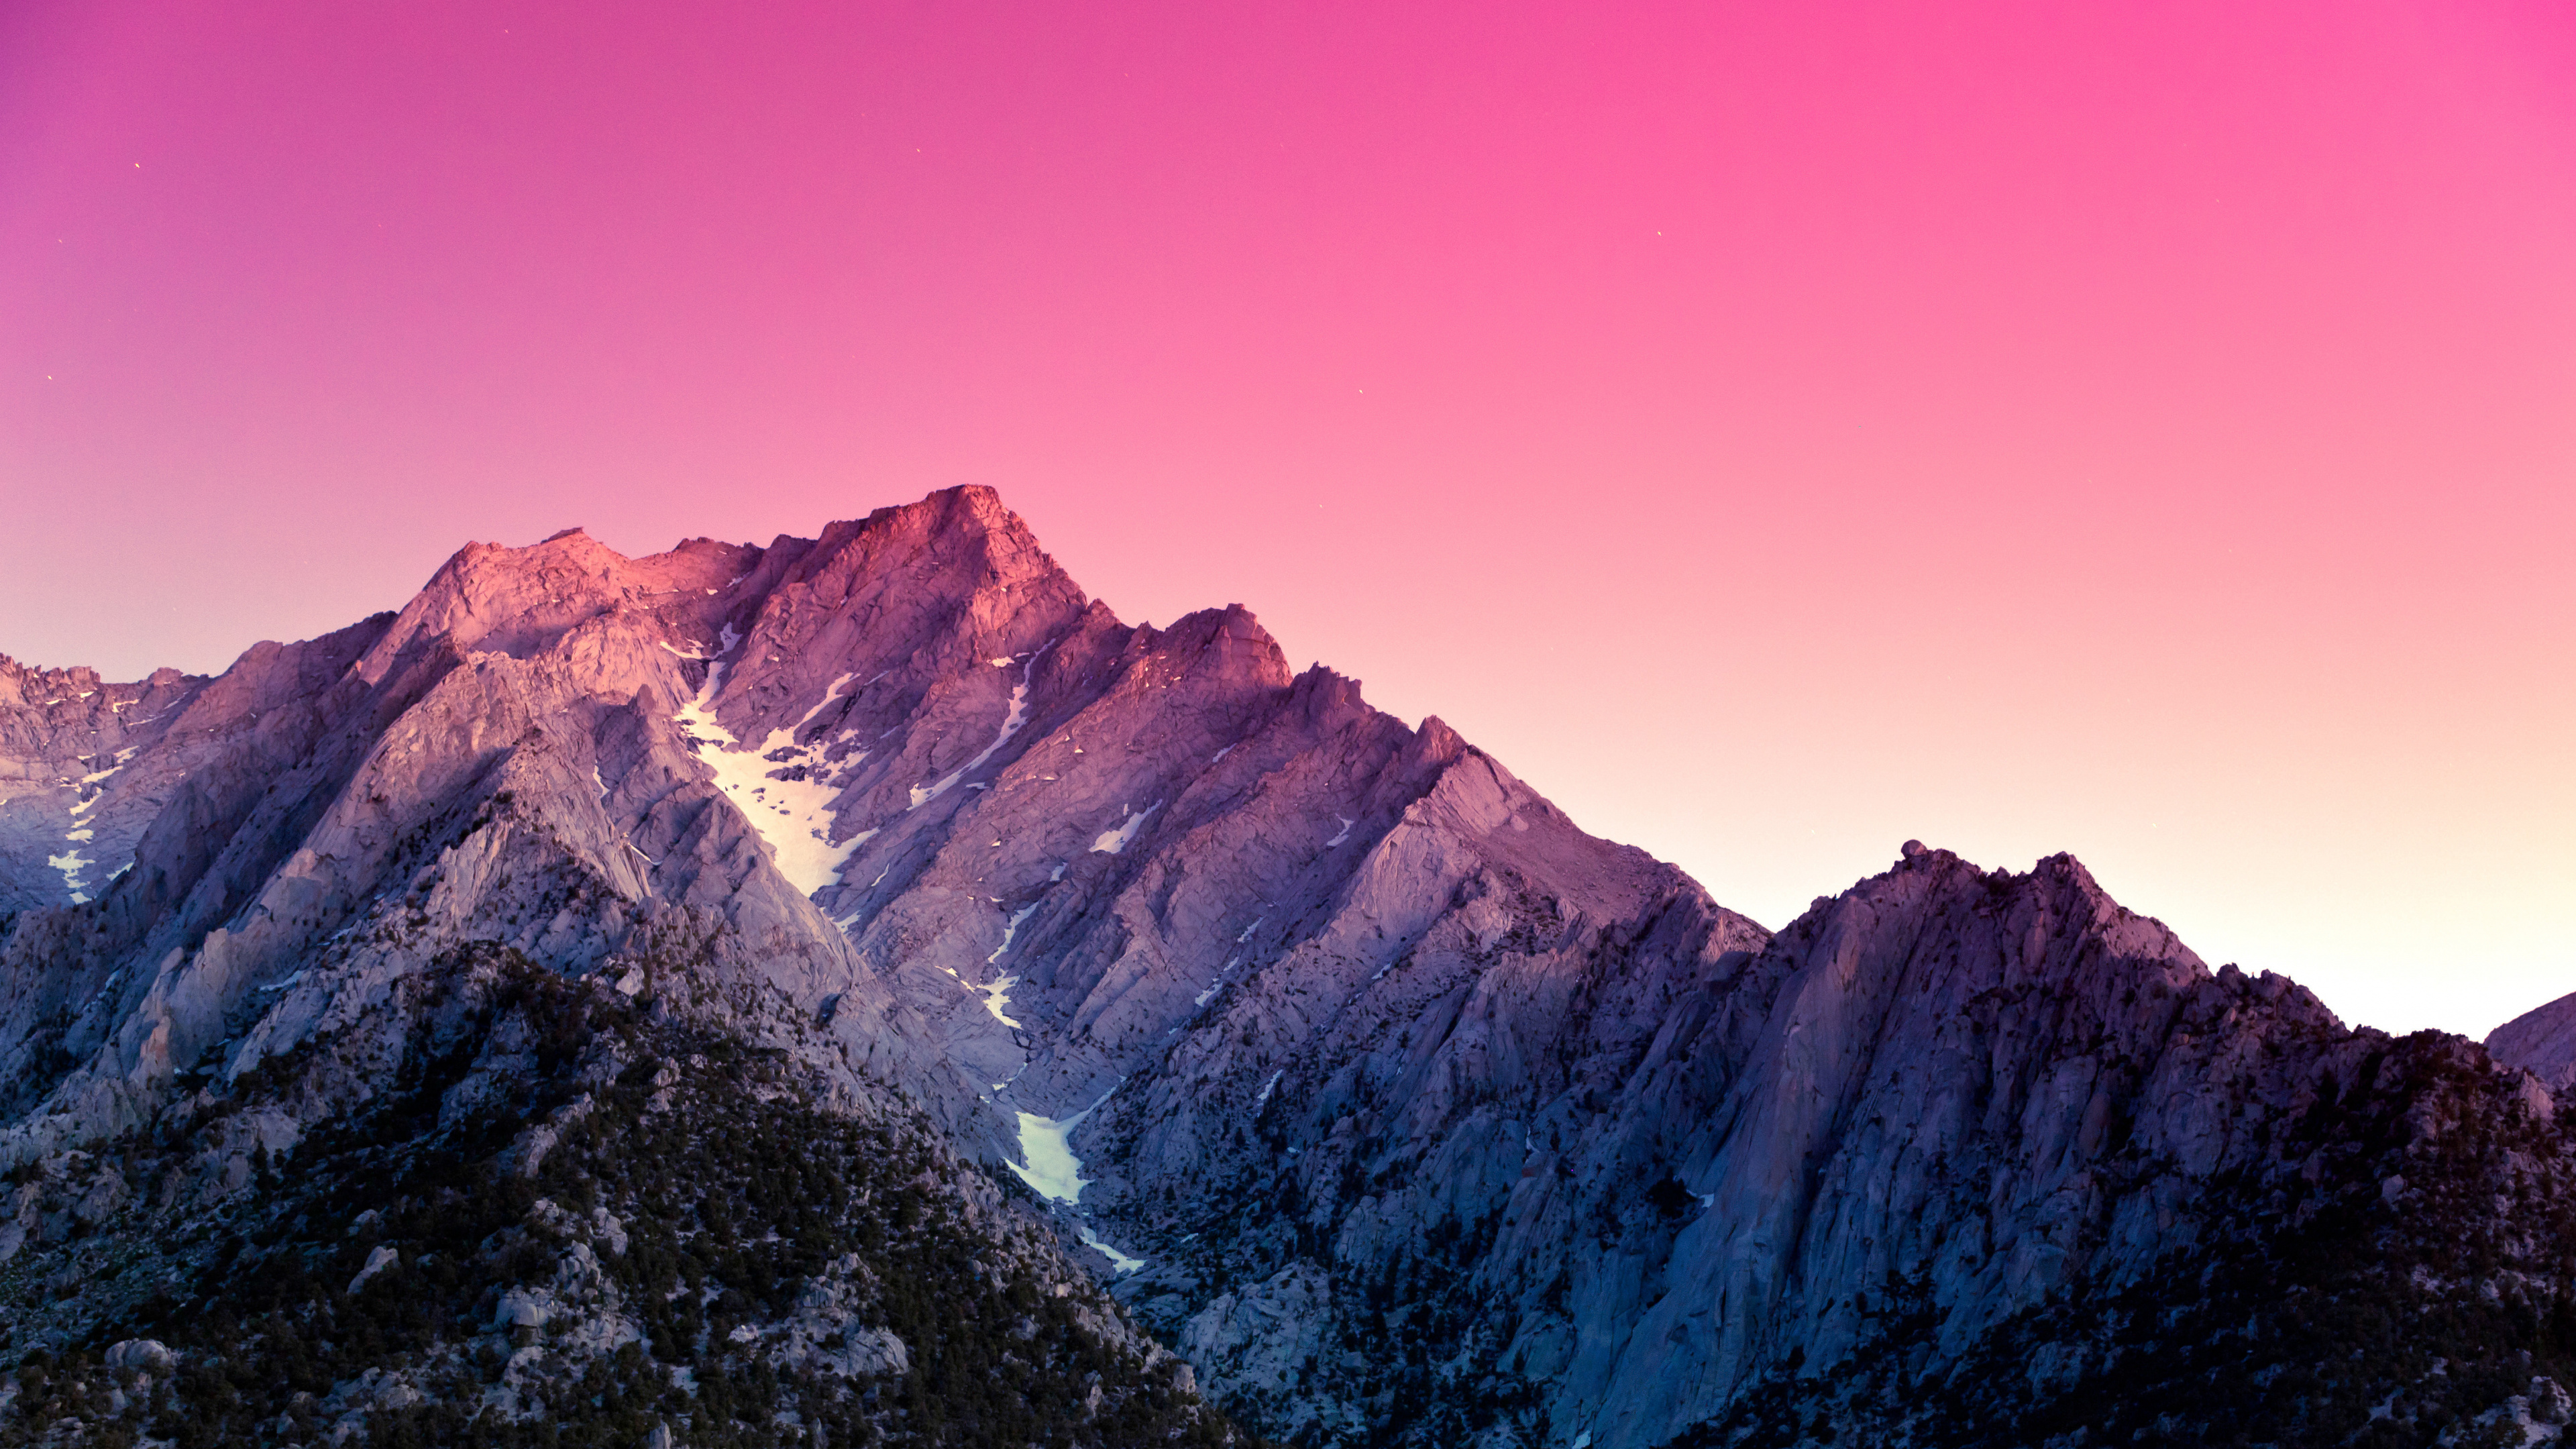 Montagne Rocheuse Brune et Grise Sous Ciel Bleu Pendant la Journée. Wallpaper in 3840x2160 Resolution